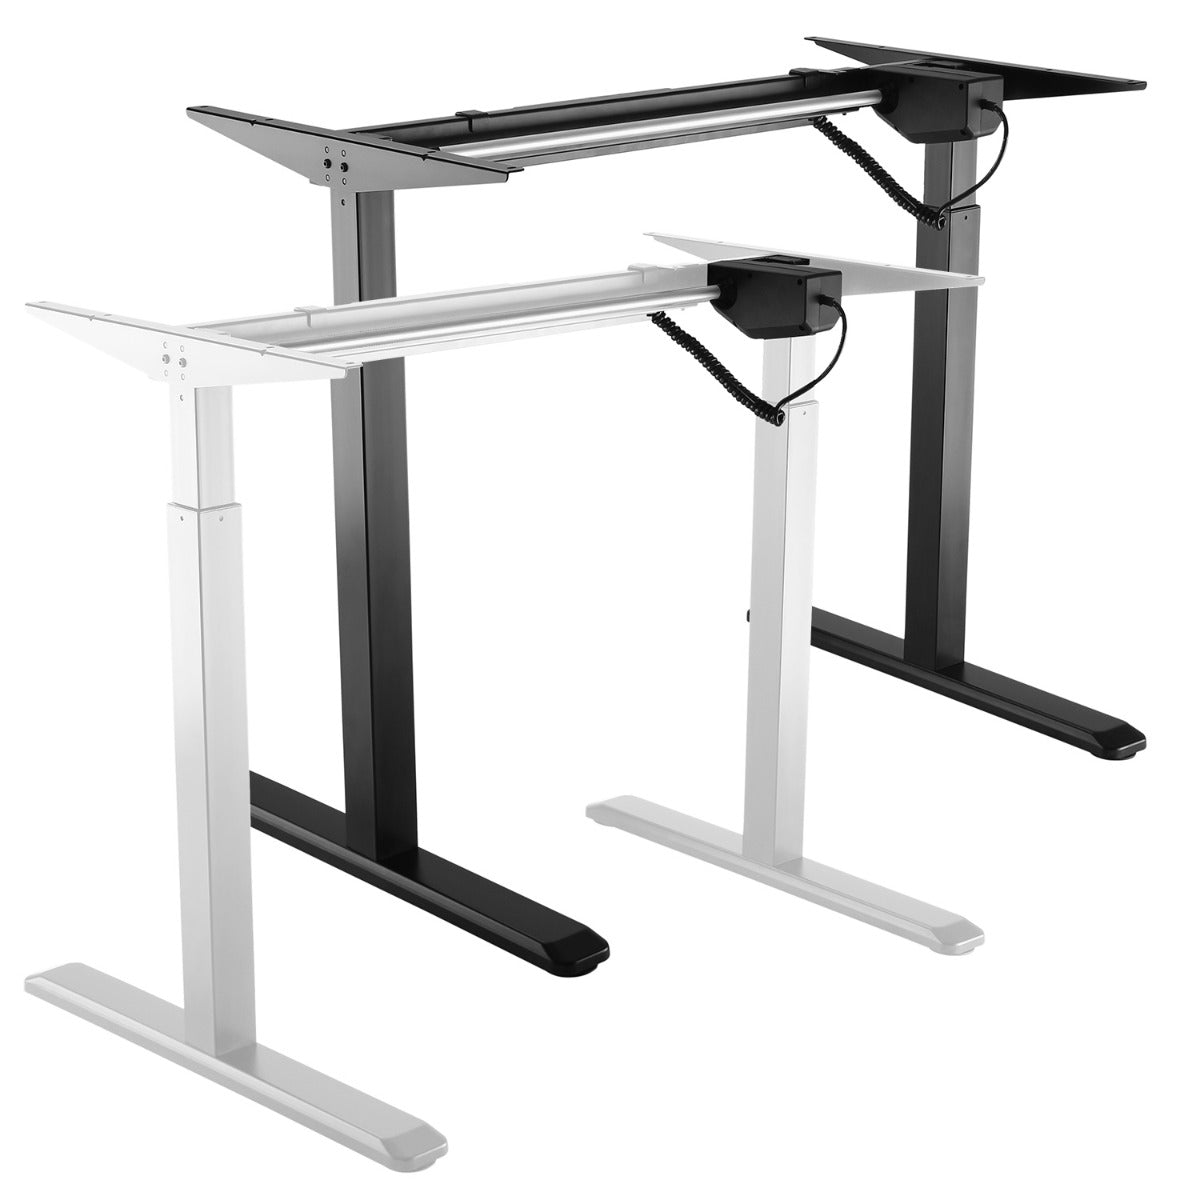 Order Office Furniture Single Motor Electric Desk Frame Only - Black or White Option - OOF01